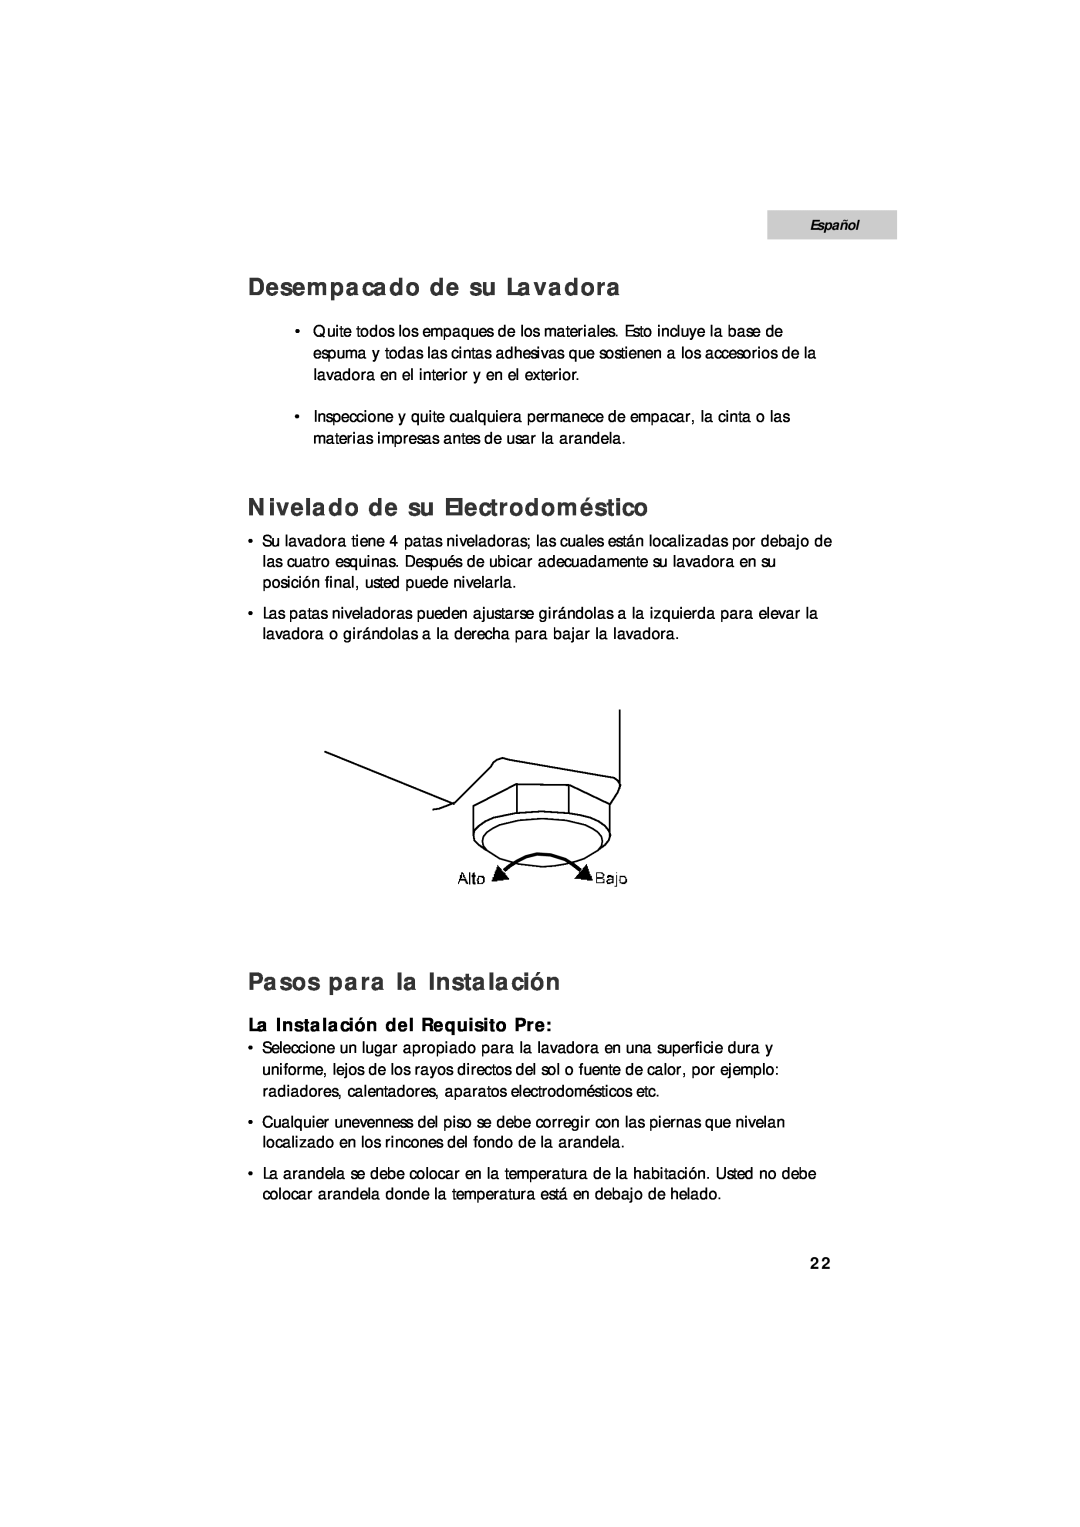 Summit SPW1200P user manual Desempacado de su Lavadora, Nivelado de su Electrodoméstico, Pasos para la Instalación, Español 